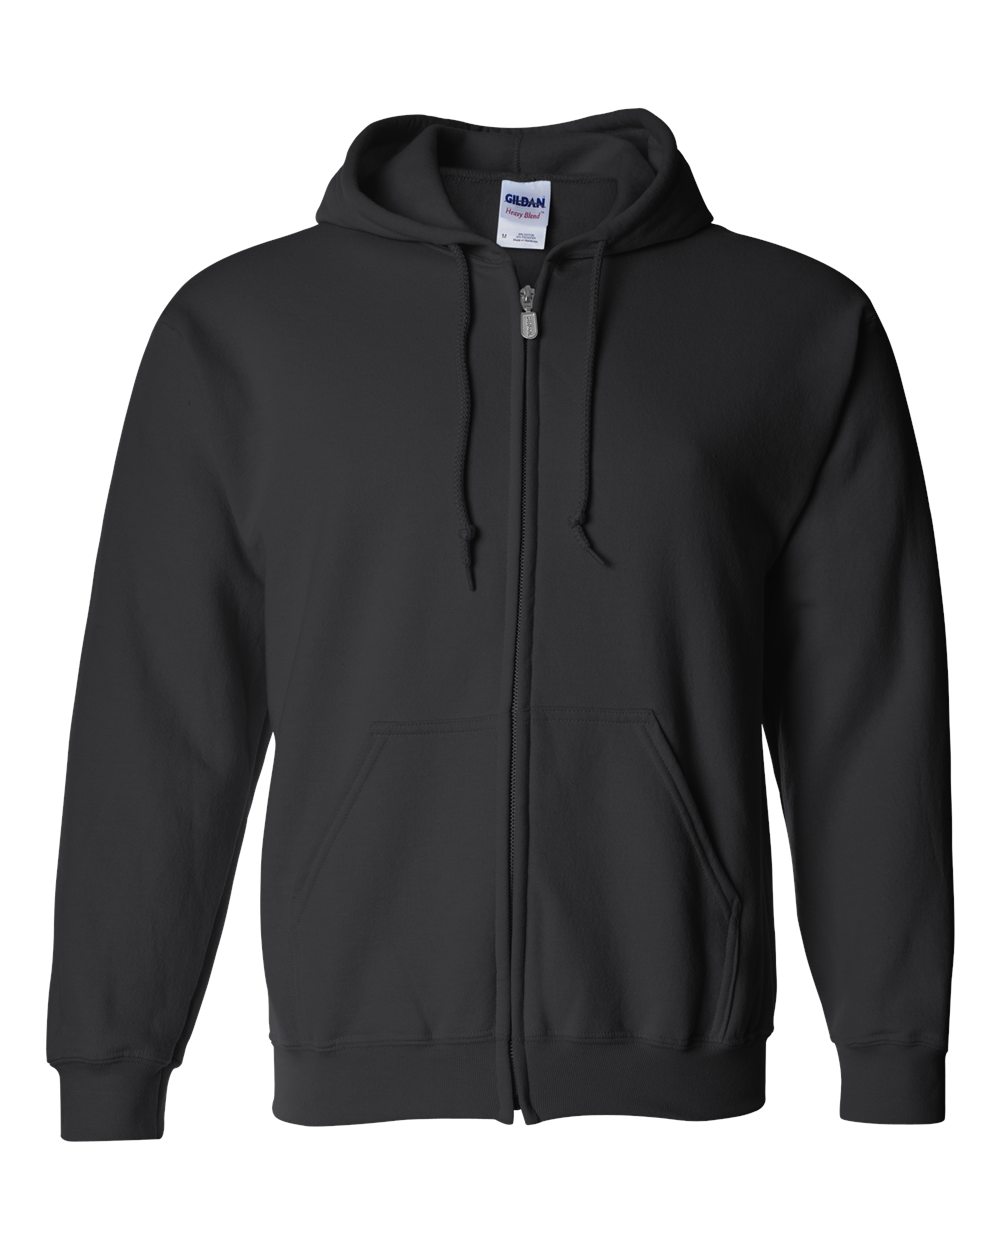 Custom Gildan Heavy Blend Full Zip Hoodie, Personalized Hooded Sweatshirt